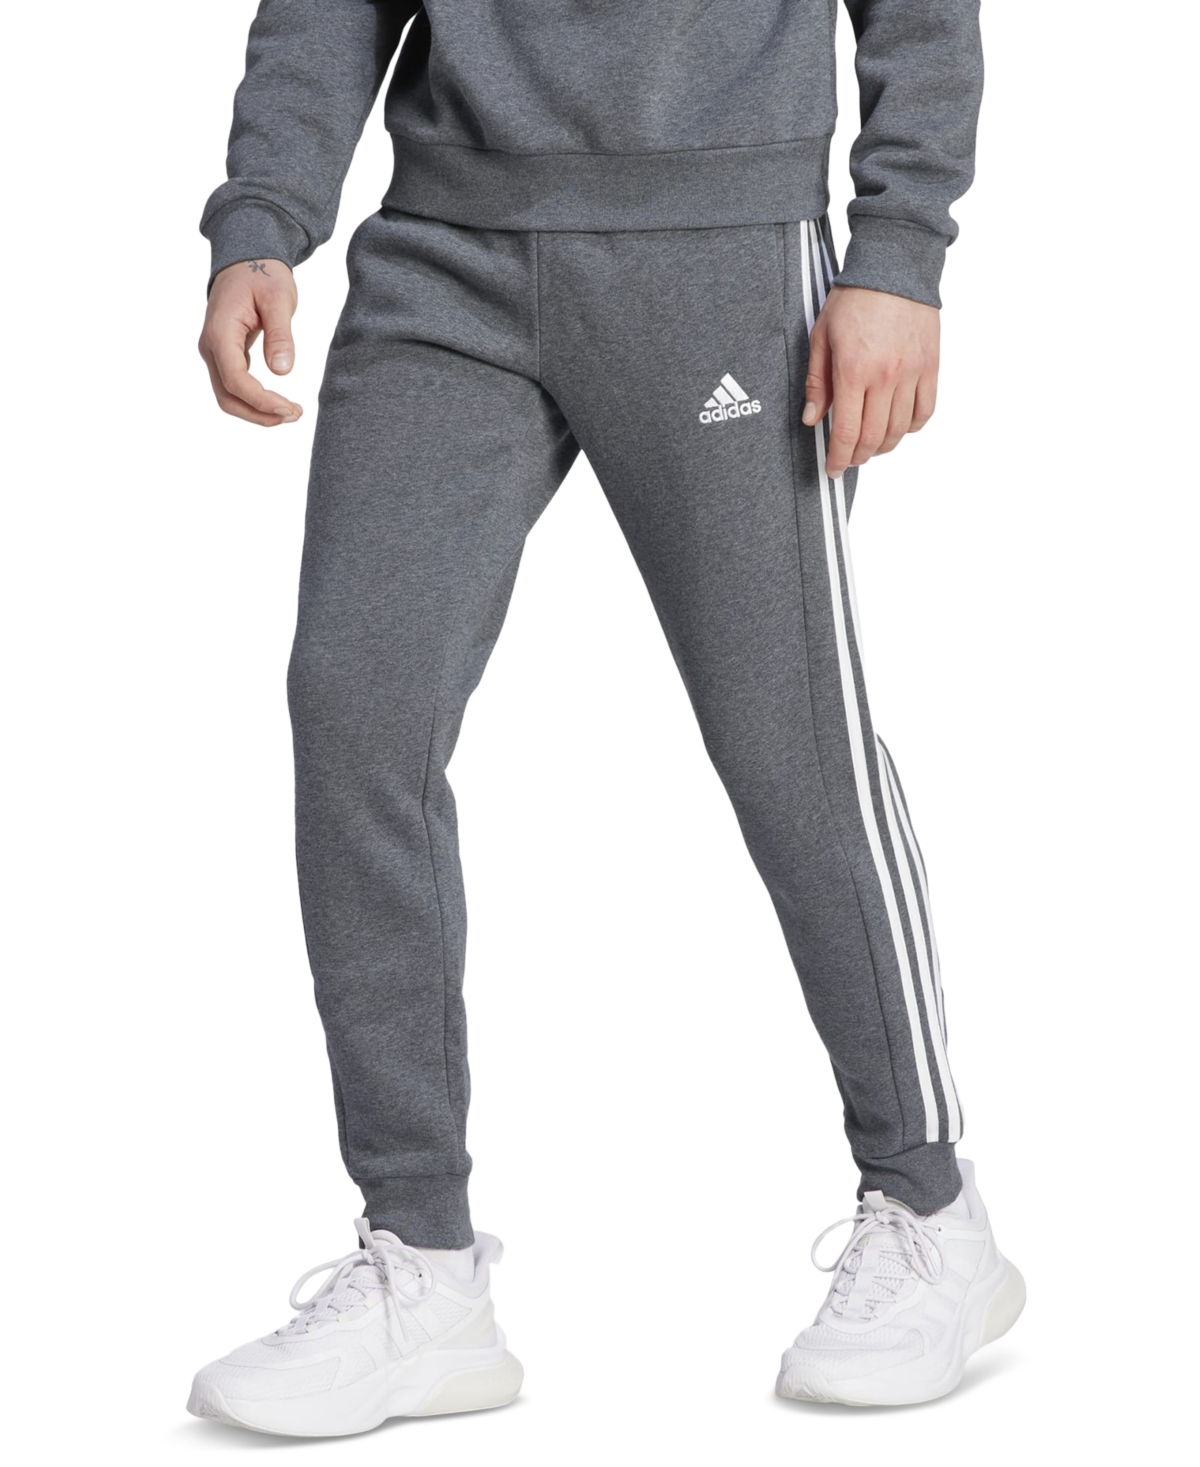 Adidas Originals Adidas Men's Essentials 3-stripes Regular-fit Fleece Joggers, Regular And Big & Tall In Dgh,wht